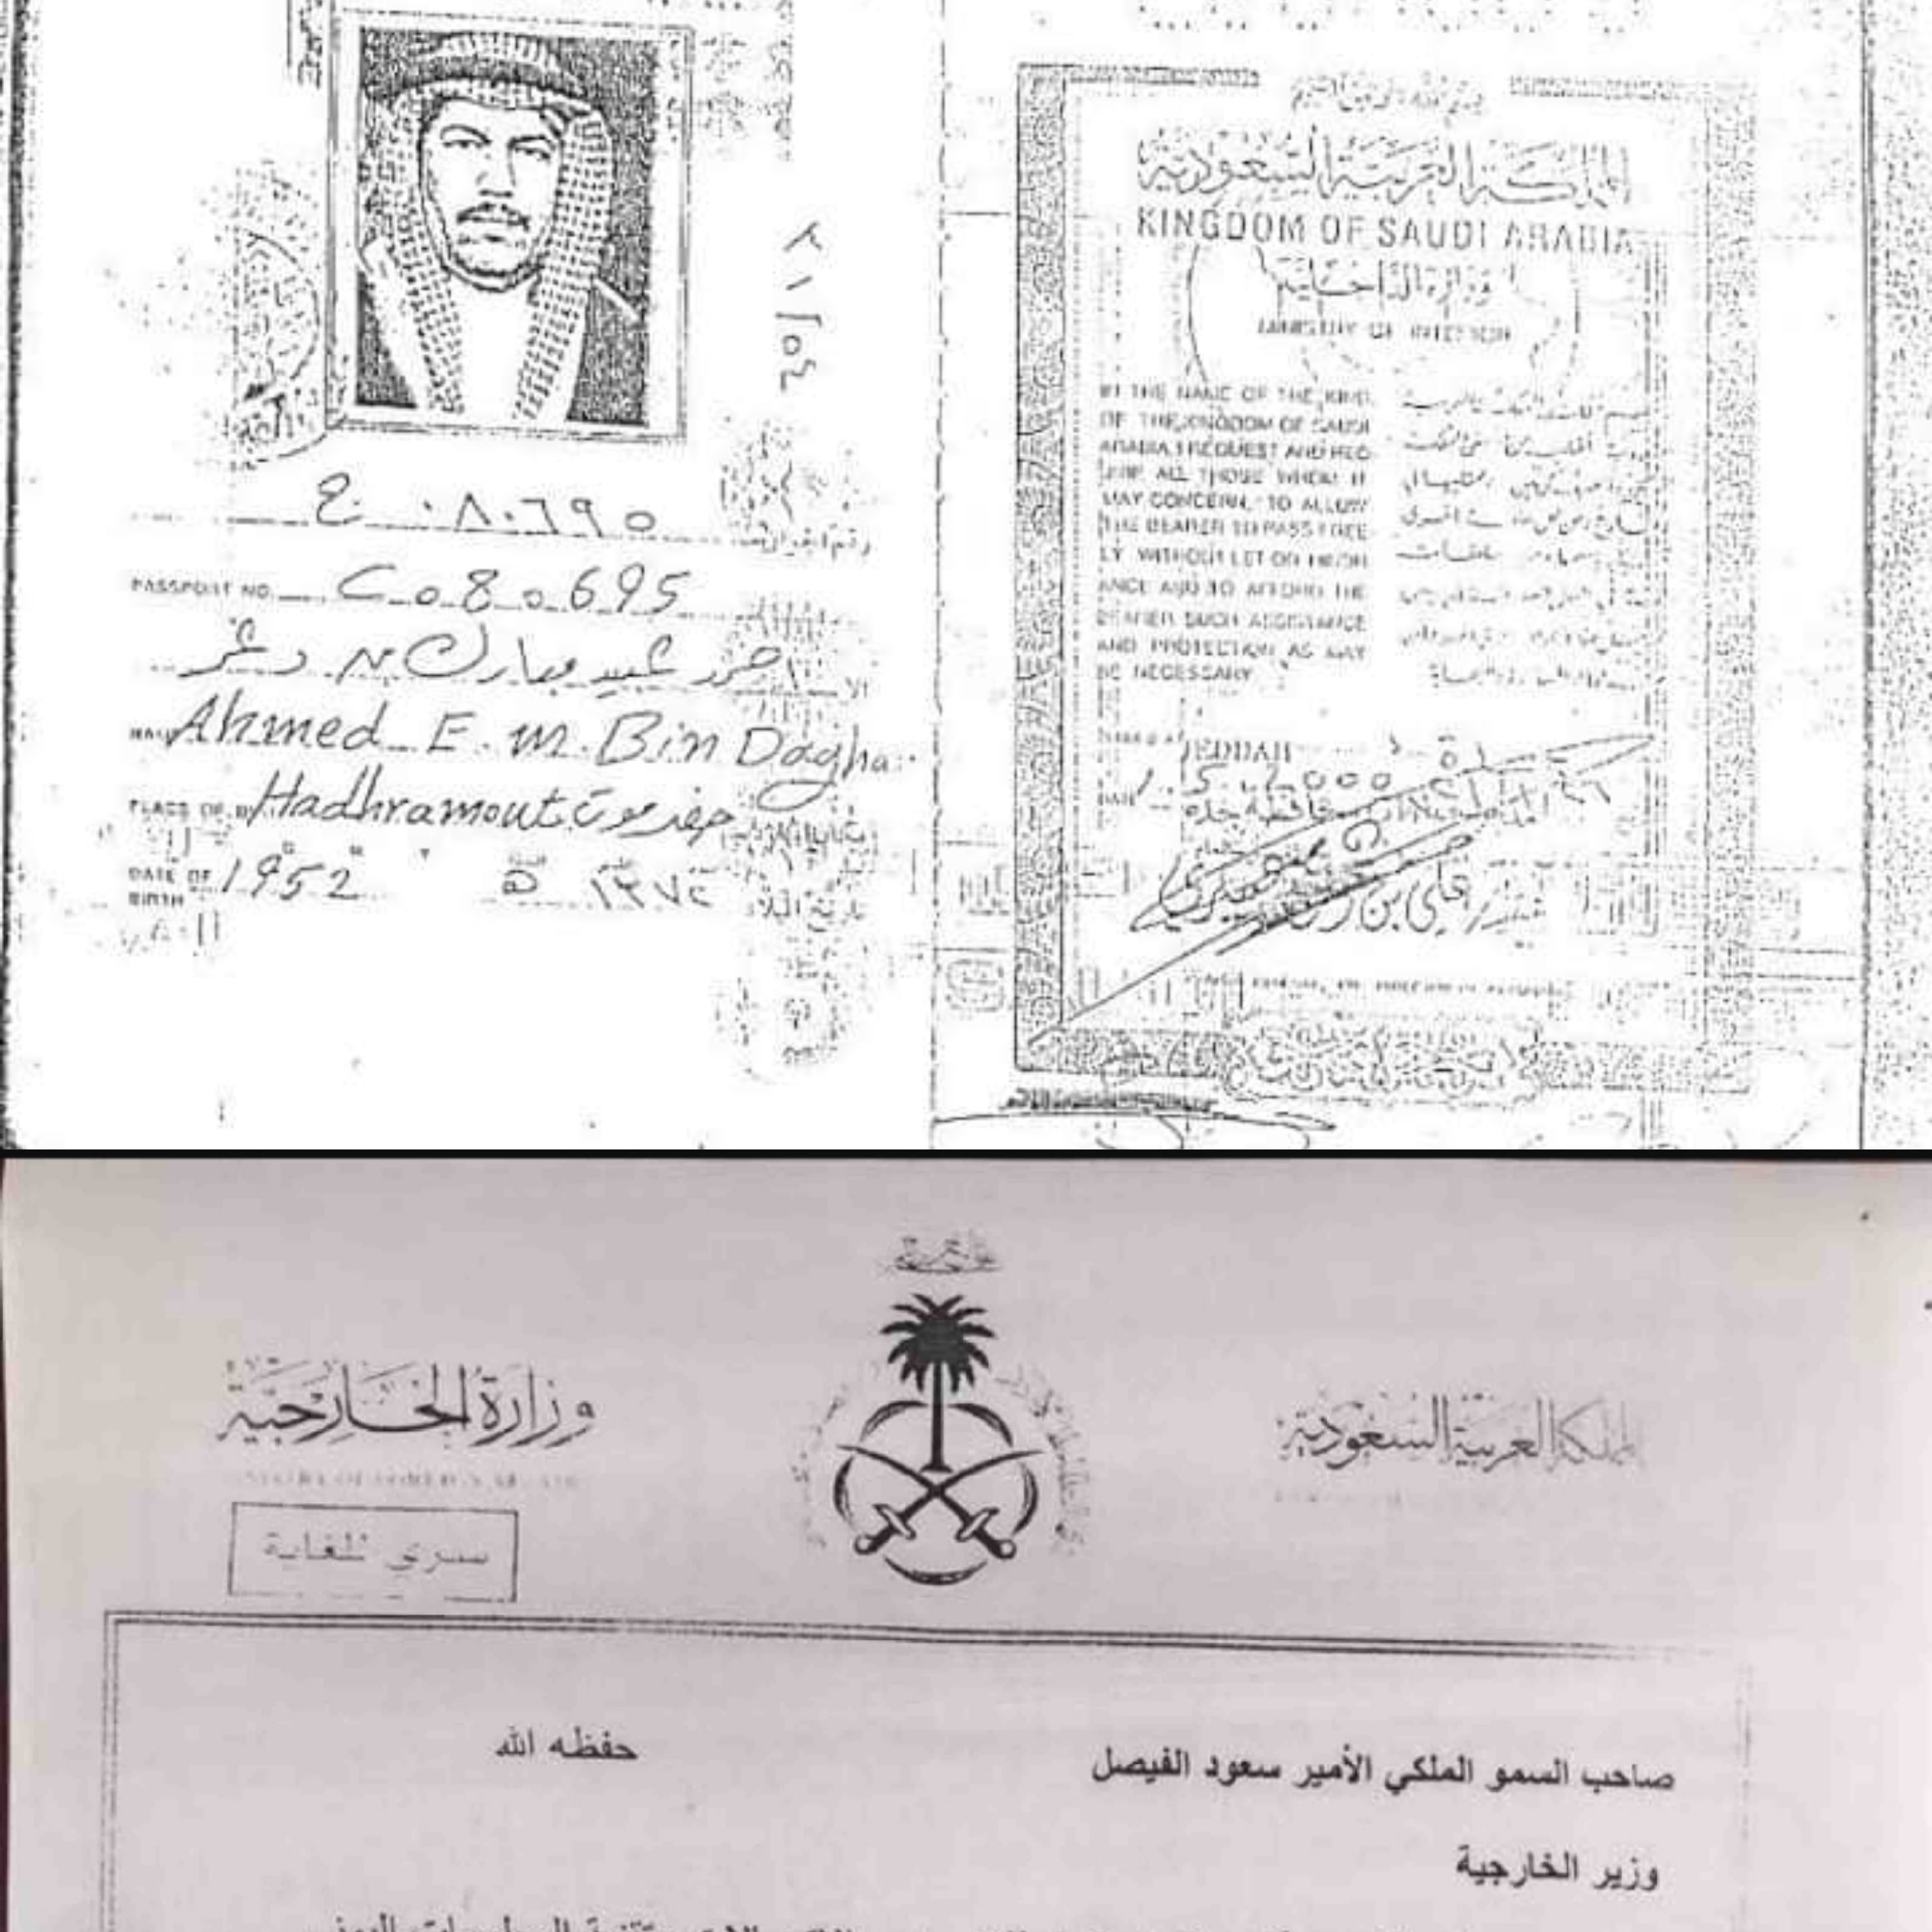 الرئيس اليمني المؤقت يسعود الدولة.. بن دغر والعليمي يحملان الجنسية السعودية (وثائق) ..!!